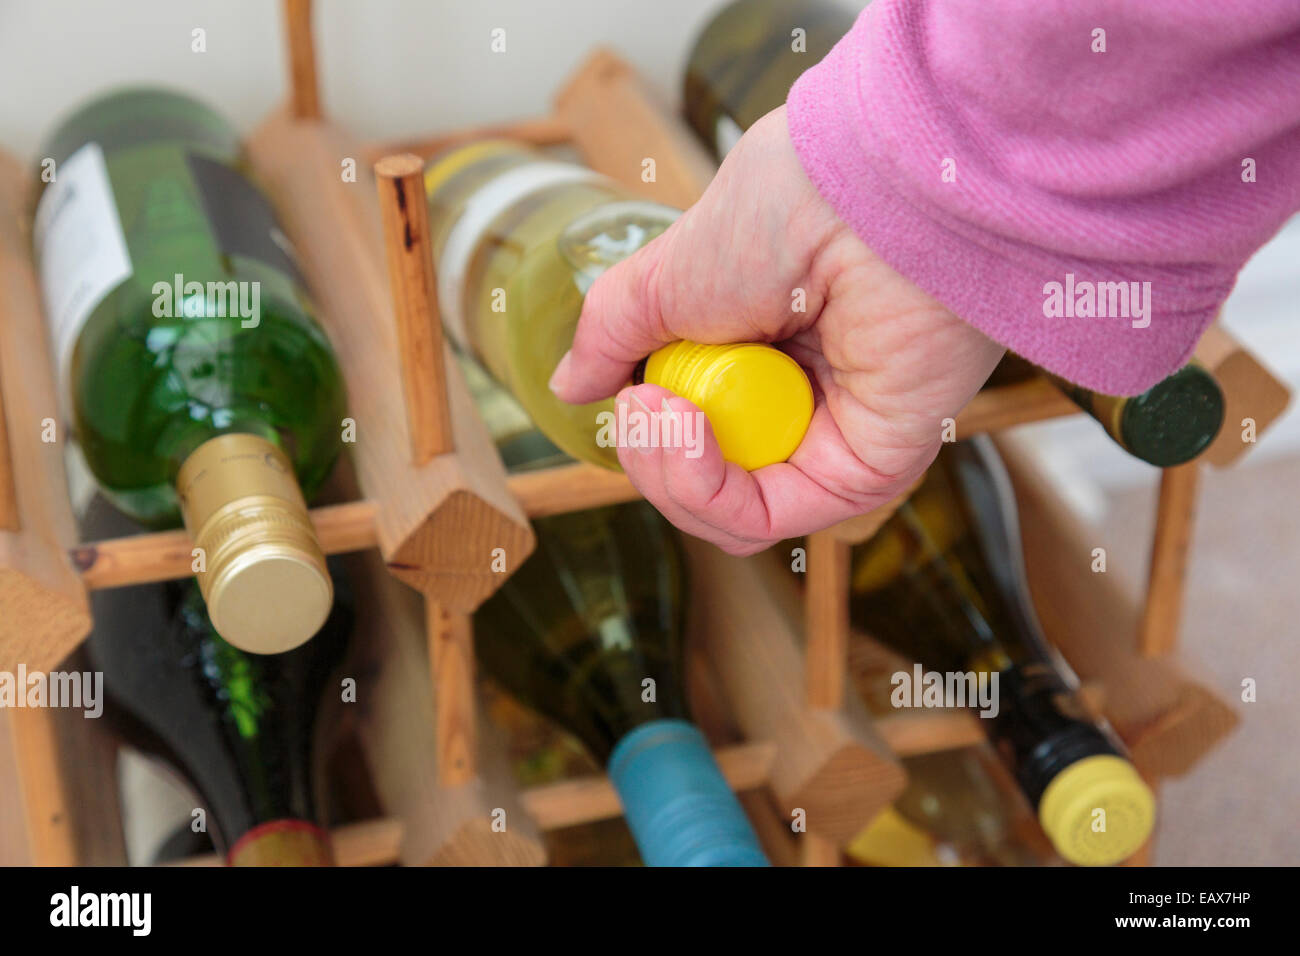 Scena quotidiana dove una donna sceglie una bottiglia di vino bianco da bere da una cantina di vini diversi a casa. Concetto di stile di vita. Inghilterra Regno Unito Gran Bretagna Foto Stock